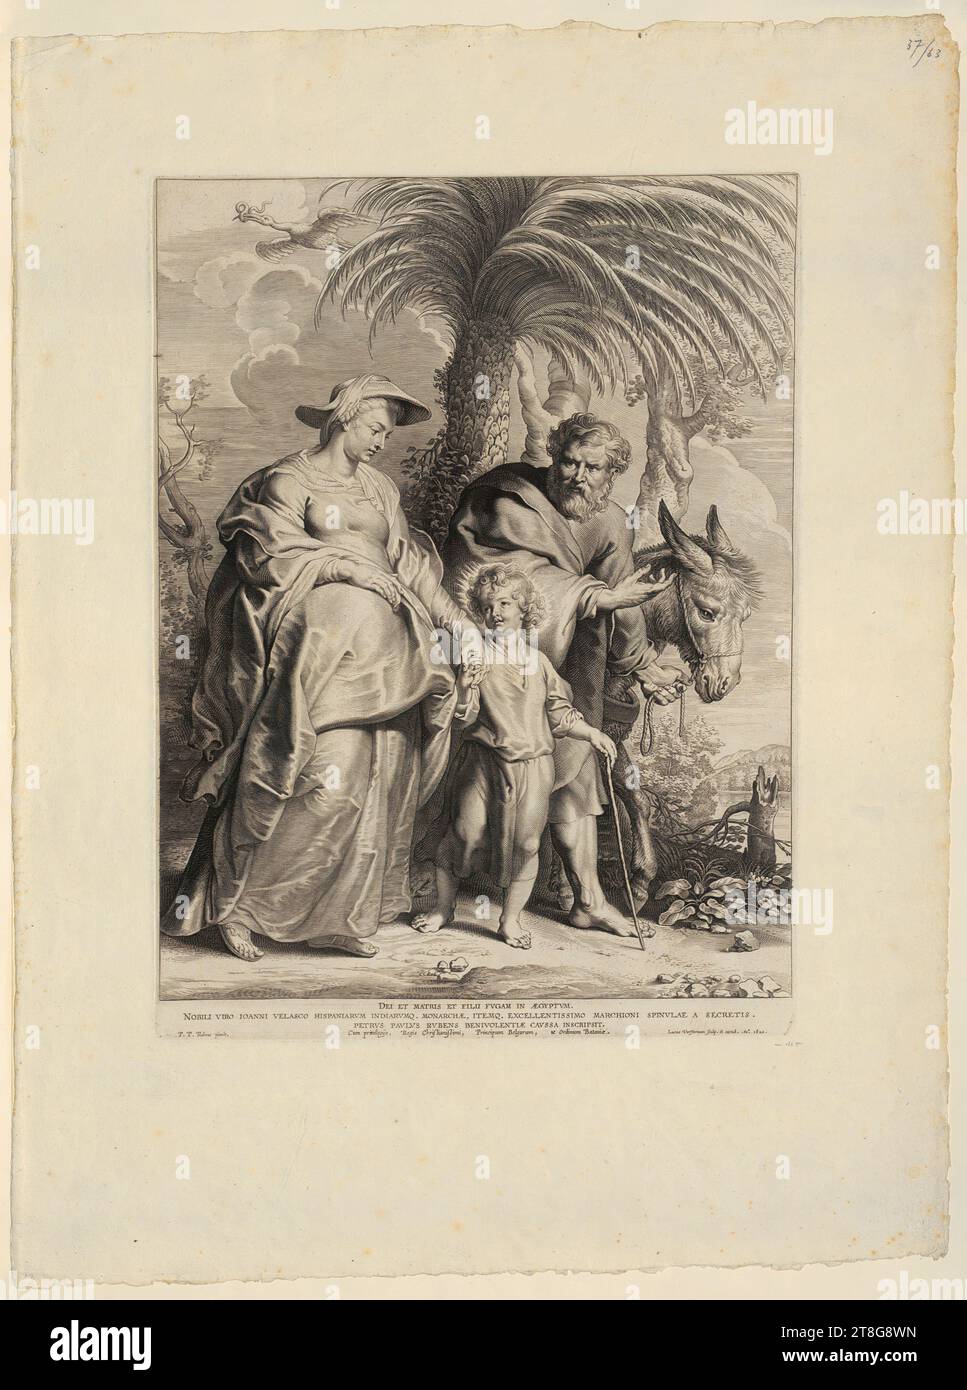 Lucas Vorsterman (der ältere) (1595 - 1675)Peter Paul Rubens (1577 - 1640), nach der Rückkehr der Heiligen Familie aus Ägypten, Druckdatum: 1620, Kupferstich, Blattgröße: Ca. 60,8 x 45,5 cm Plattenmarke: 42,2 x 31,1 cm, unten 'DEI ET MATRIS ET FILII FVGAM IN ÆGYPTVM., NOBILI VIRO IOANNI VELASCO HISPANIARVM Stockfoto